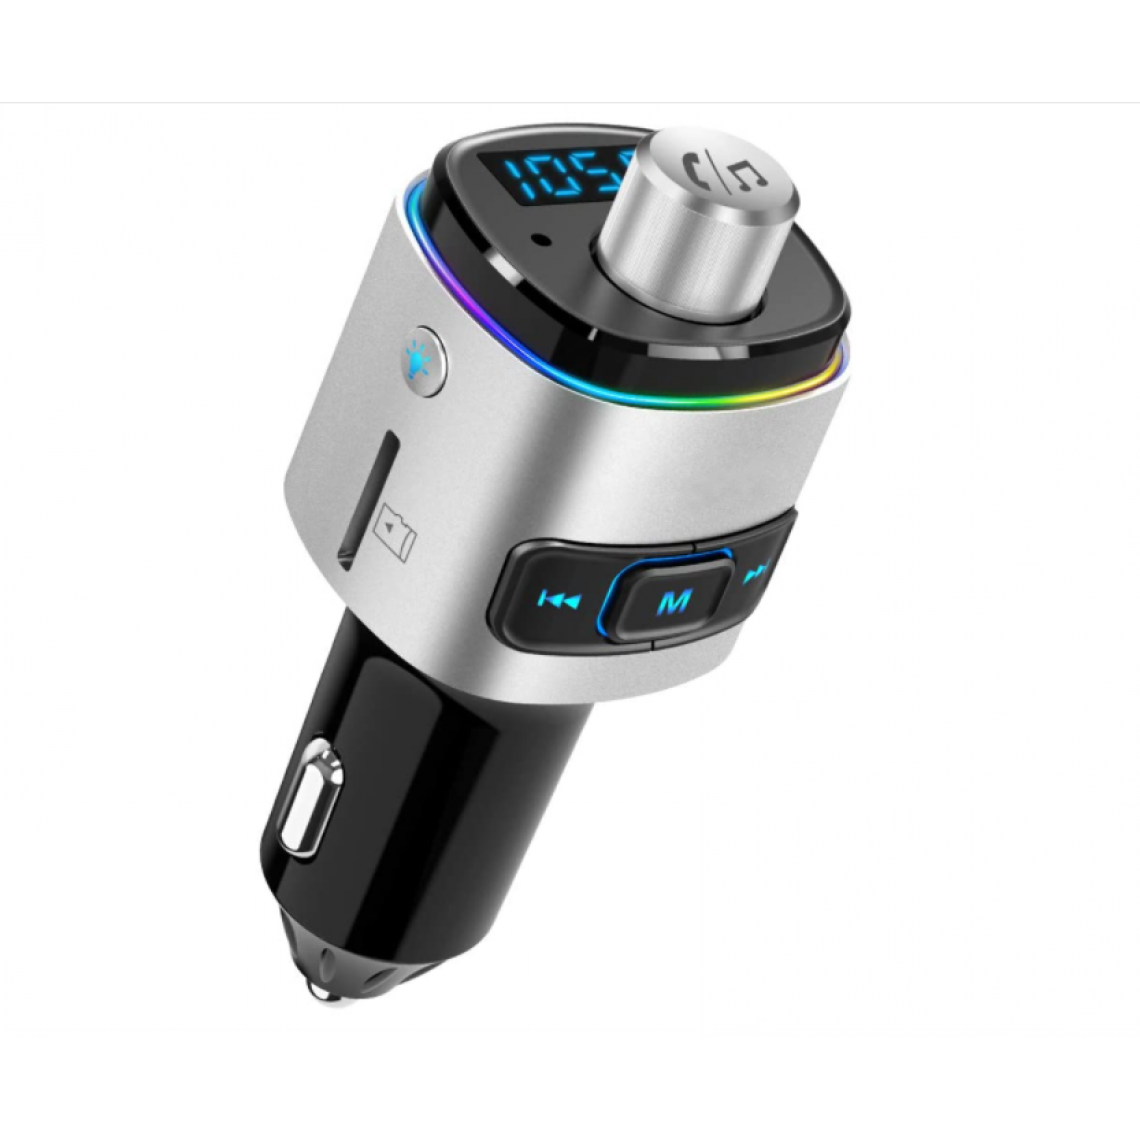 Chrono - Émetteur FM Bluetooth pour voiture, adaptateur de voiture Bluetooth rétroéclairé à 7 couleurs LED avec charge QC3.0, prise en charge de l'assistant Siri Google, clé USB, carte microSD, kit de voiture mains libres(Argent) - Enceintes Hifi